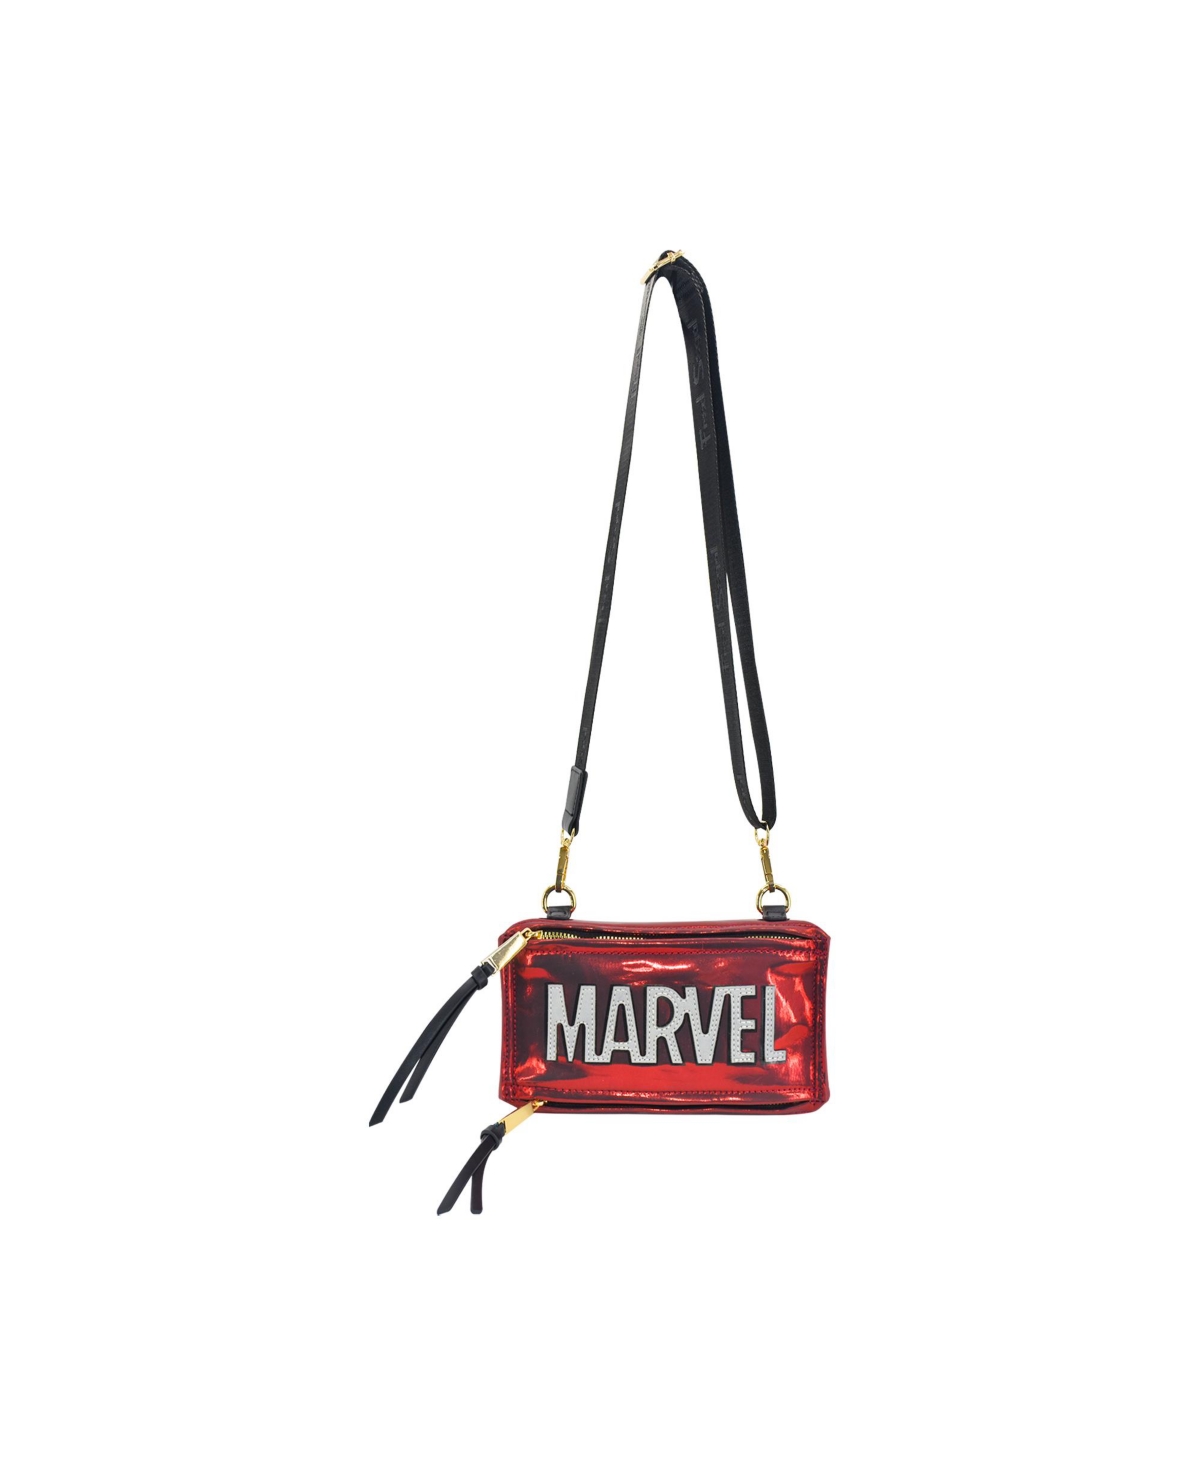 Marvel Marvel Brick shoulder Bag. - Bright Red